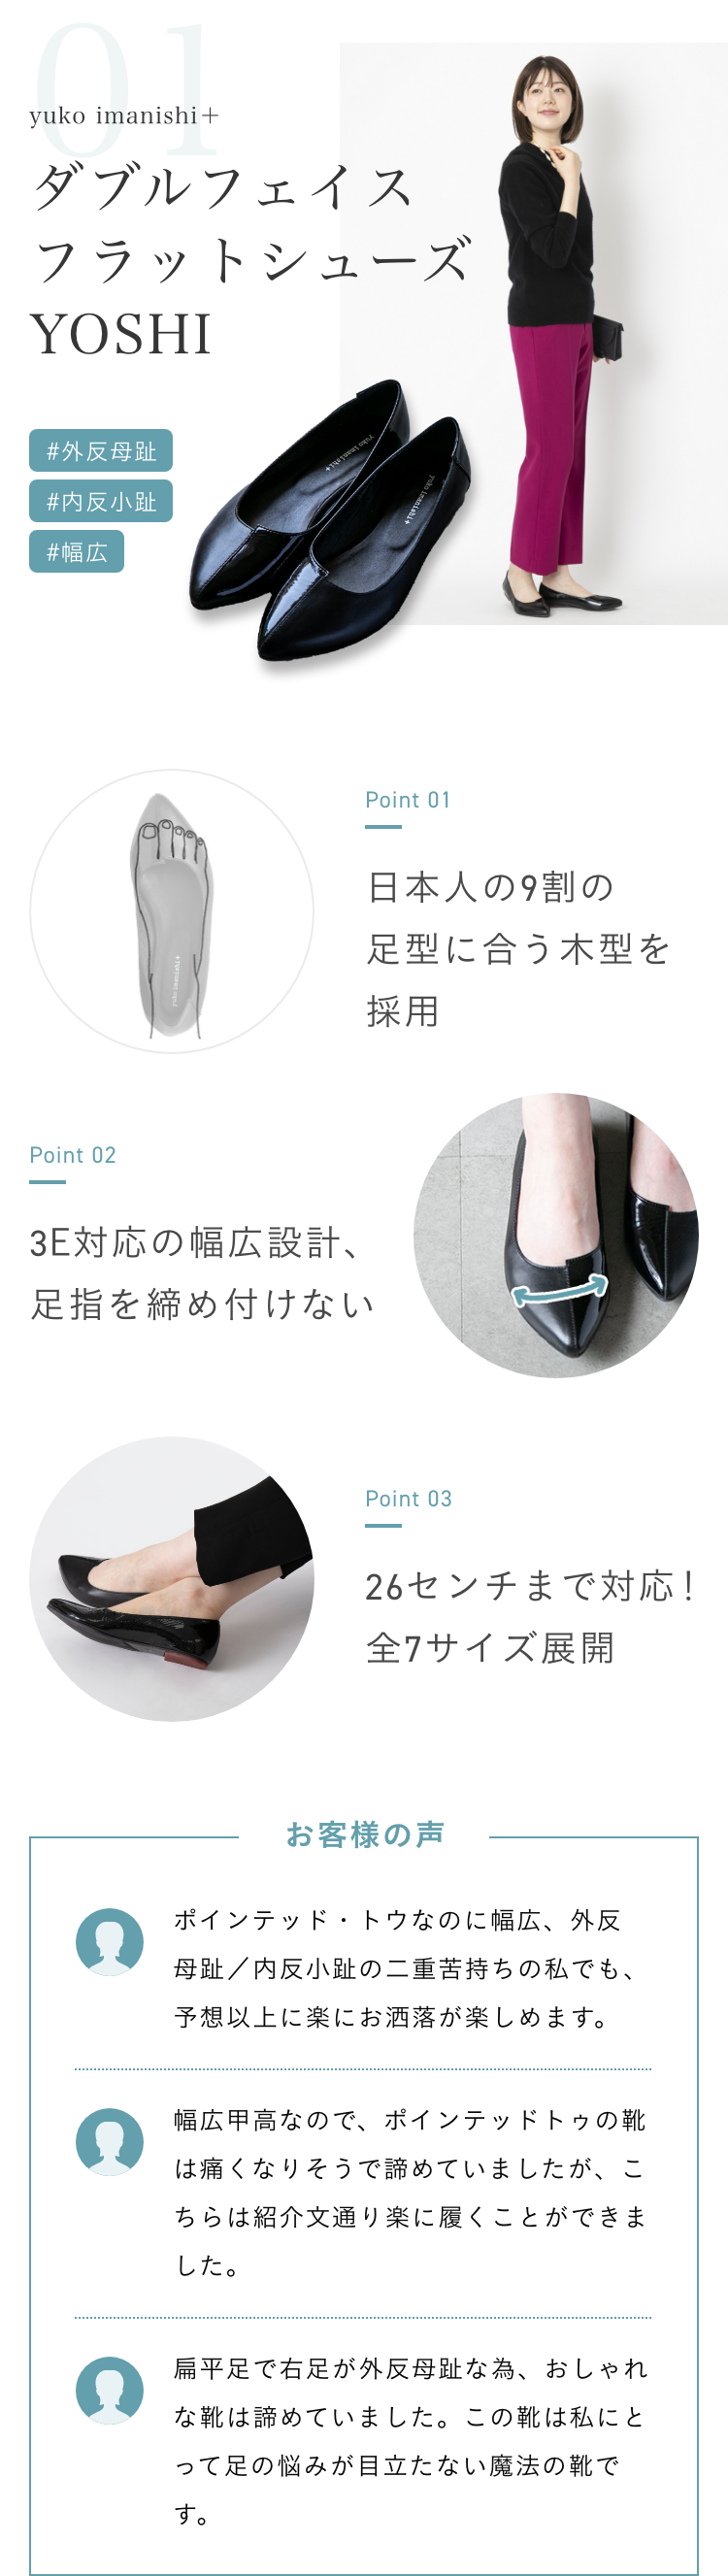 yuko imanishi＋/ダブルフェイスフラットシューズ YOSHI。「外反母趾」「内反小趾」「幅広」といった症状の人におすすめ。ポイント1、「日本人の9割の足型に合う木型を採用」。ポイント2、「3E対応の幅広設計、足指を締め付けない」ポイント3「26センチまで対応！全7サイズ展開」。購入者の声1、「ポインテッド・トウなのに幅広、外反母趾／内反小趾の二重苦持ちの私でも、予想以上に楽にお洒落が楽しめます。」。購入者の声2、「幅広甲高なので、ポインテッドトゥの靴は痛くなりそうで諦めていましたが、こちらは紹介文通り楽に履くことができました。」購入者の声3、「扁平足で右足が外反母趾な為、おしゃれな靴は諦めていました。この靴は私にとって足の悩みが目立たない魔法の靴です。」